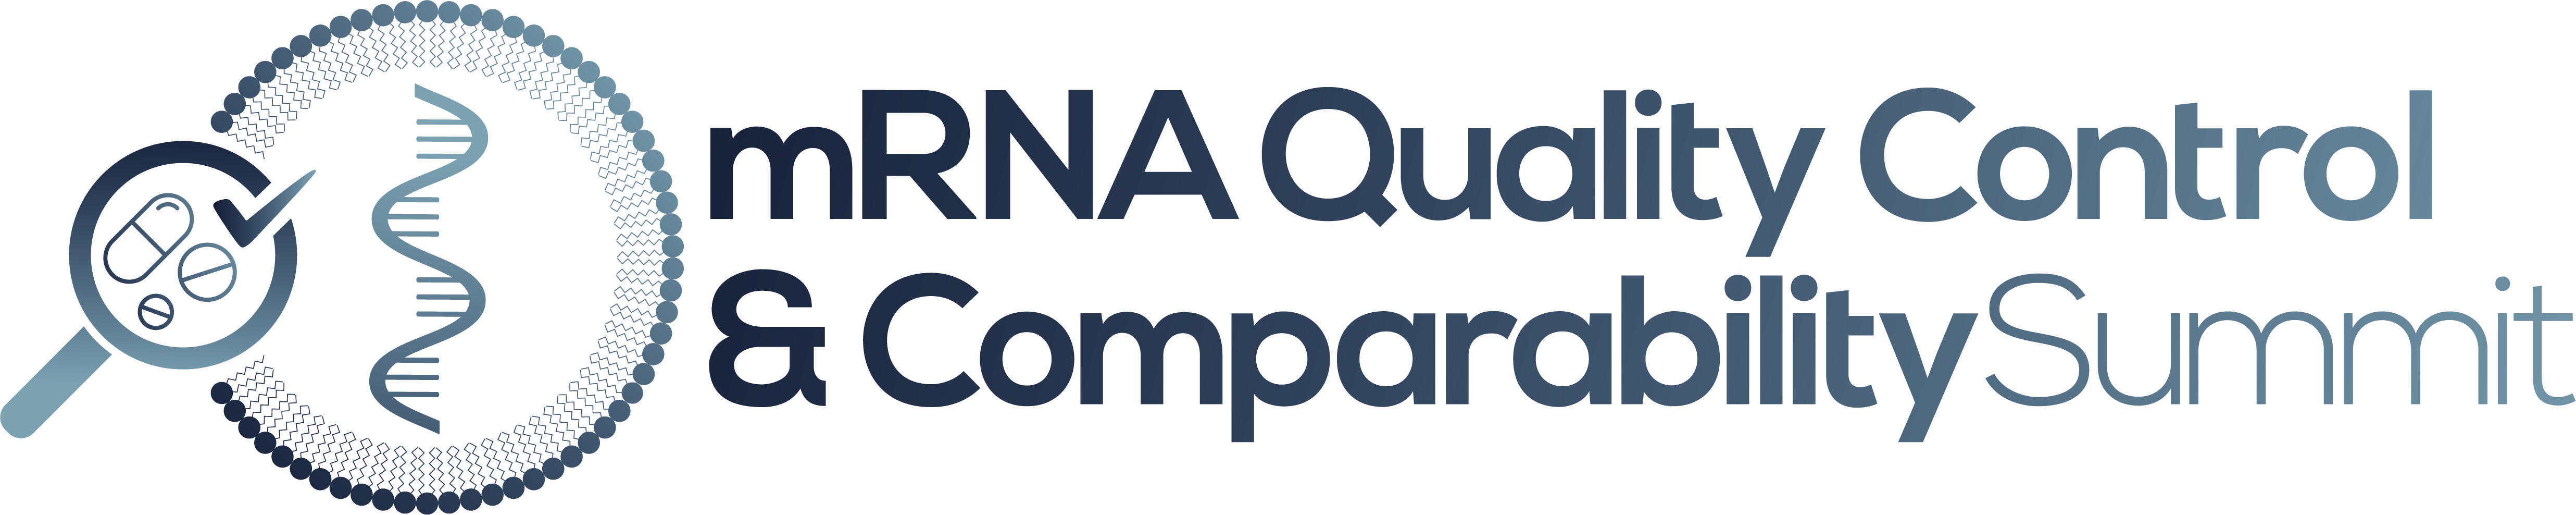 mRNA-Quality-Control-Comparability-Summit-Logo